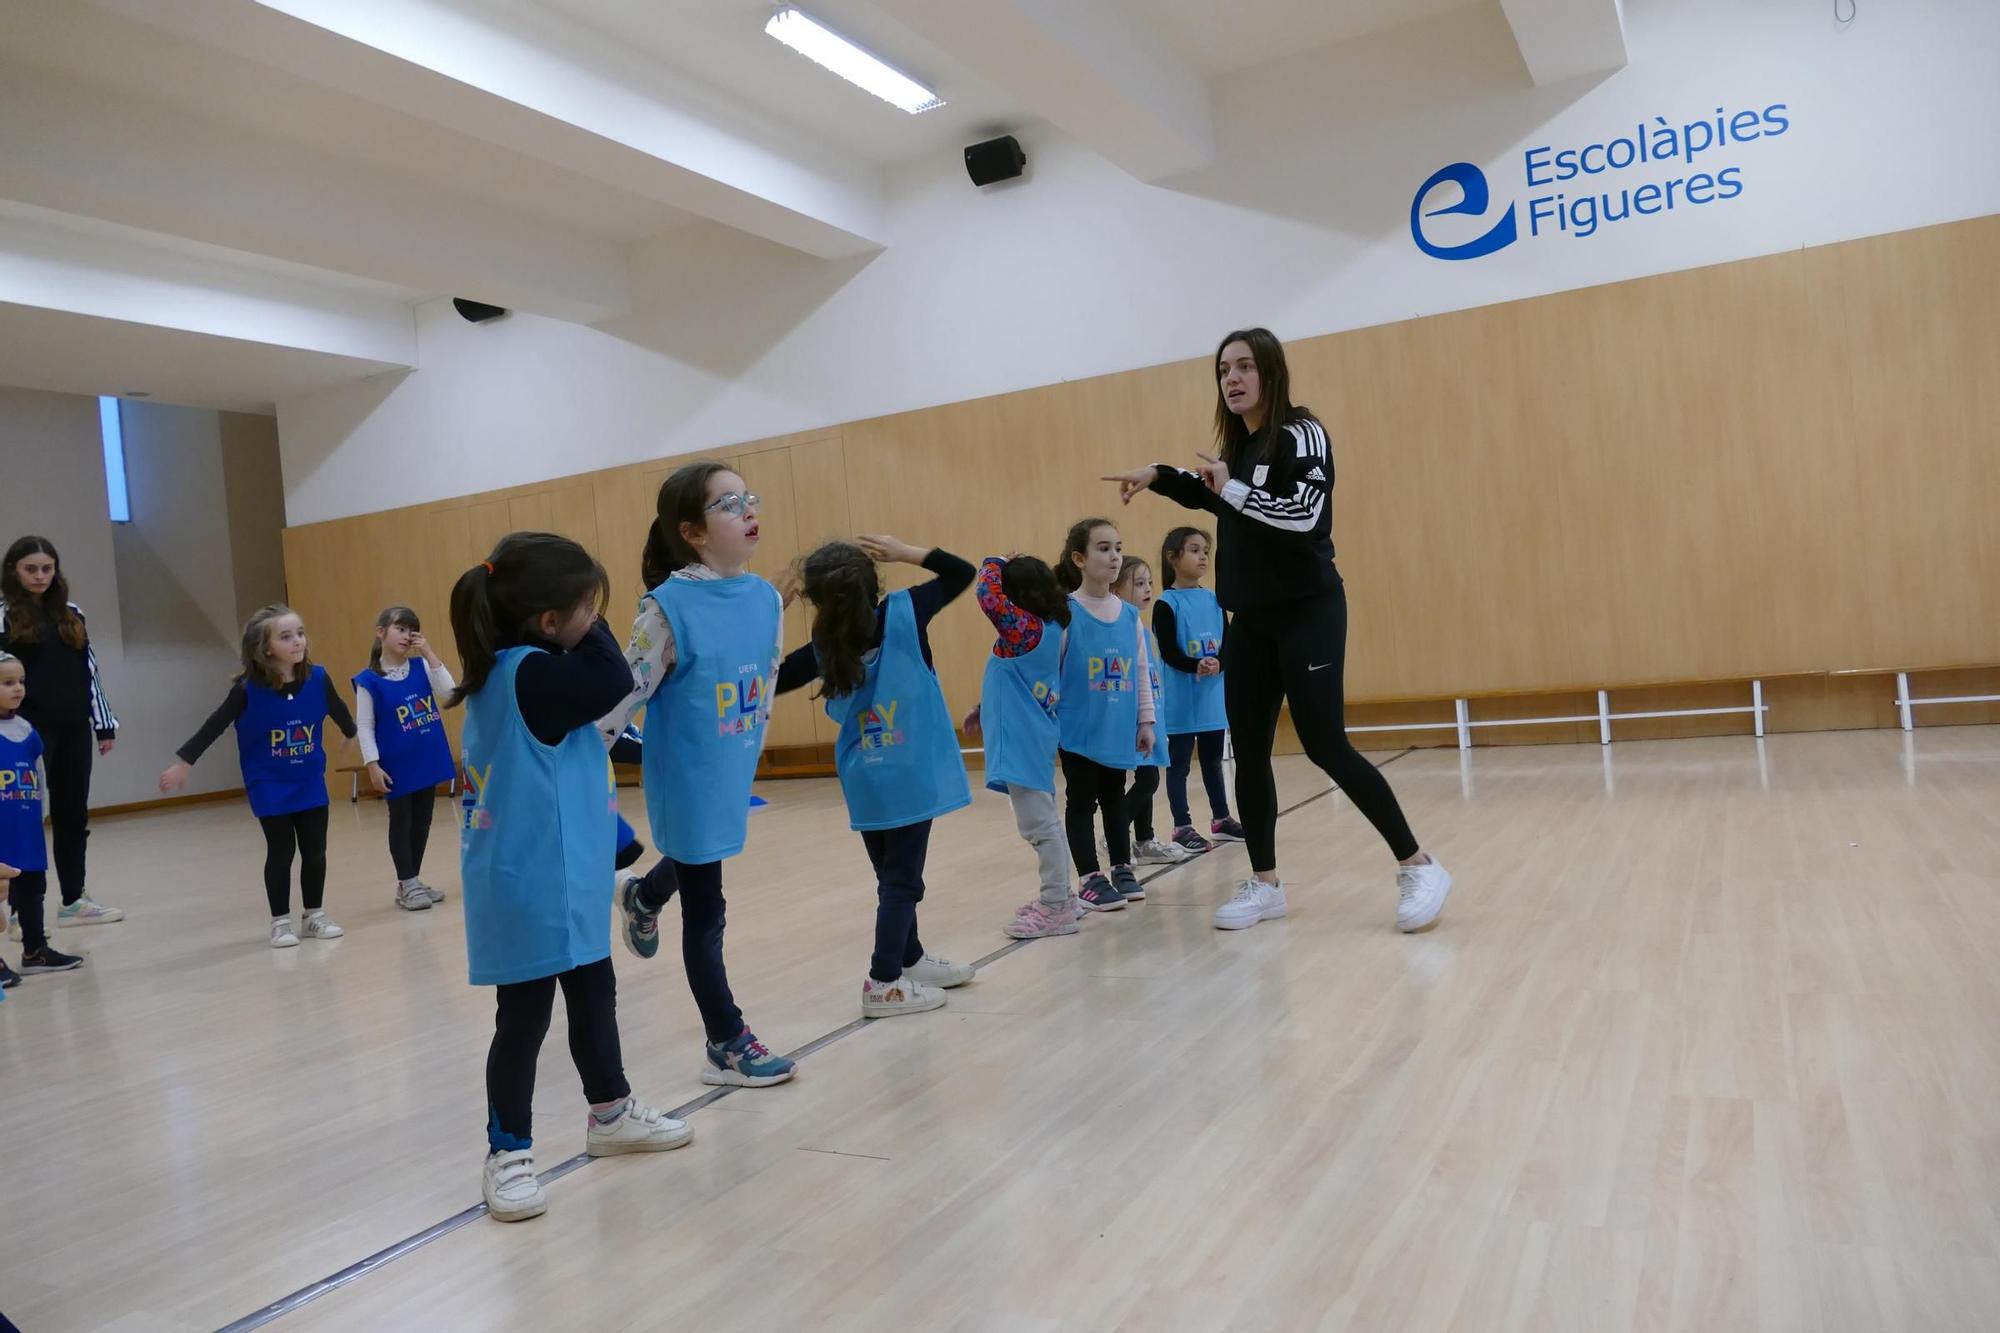 Les Playmakers d’Escolàpies Figueres reben la visita de la Federació Catalana de Futbol